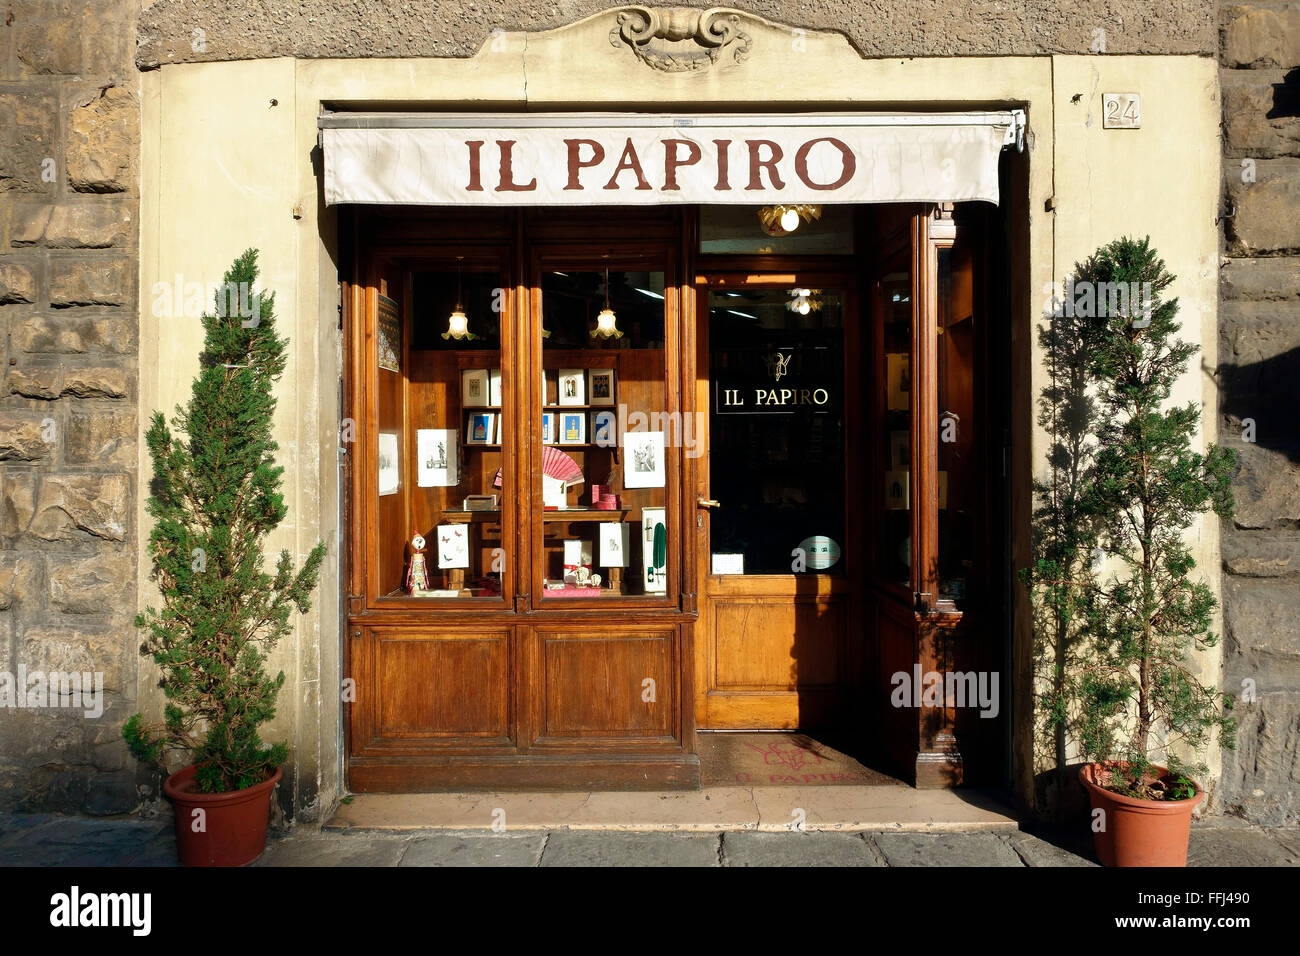 Il Papiro magasin, vitrine, porte d'entrée, produits de papier faits main. Piazza Duomo, Florence, Toscane, Italie centrale, Europe, Union européenne, UE. Banque D'Images